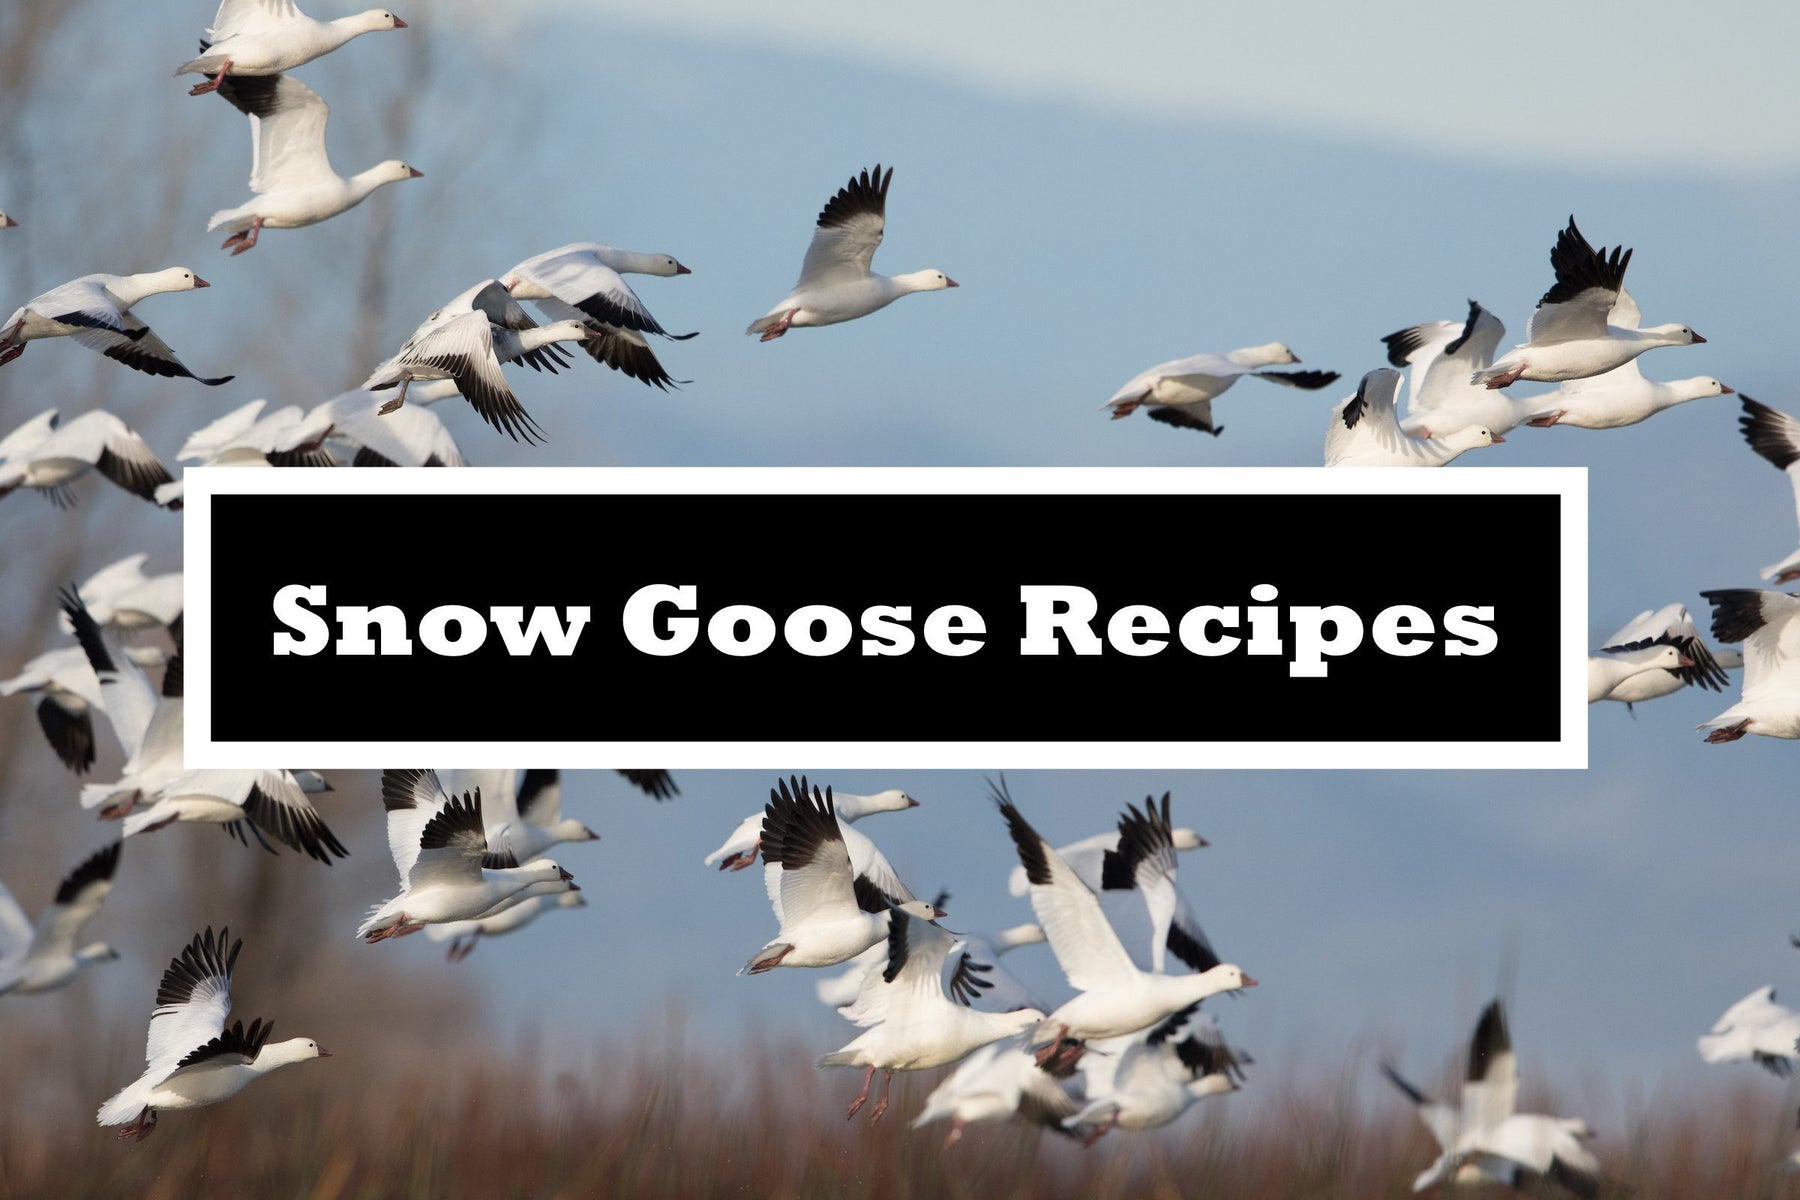 Snow Goose Recipes